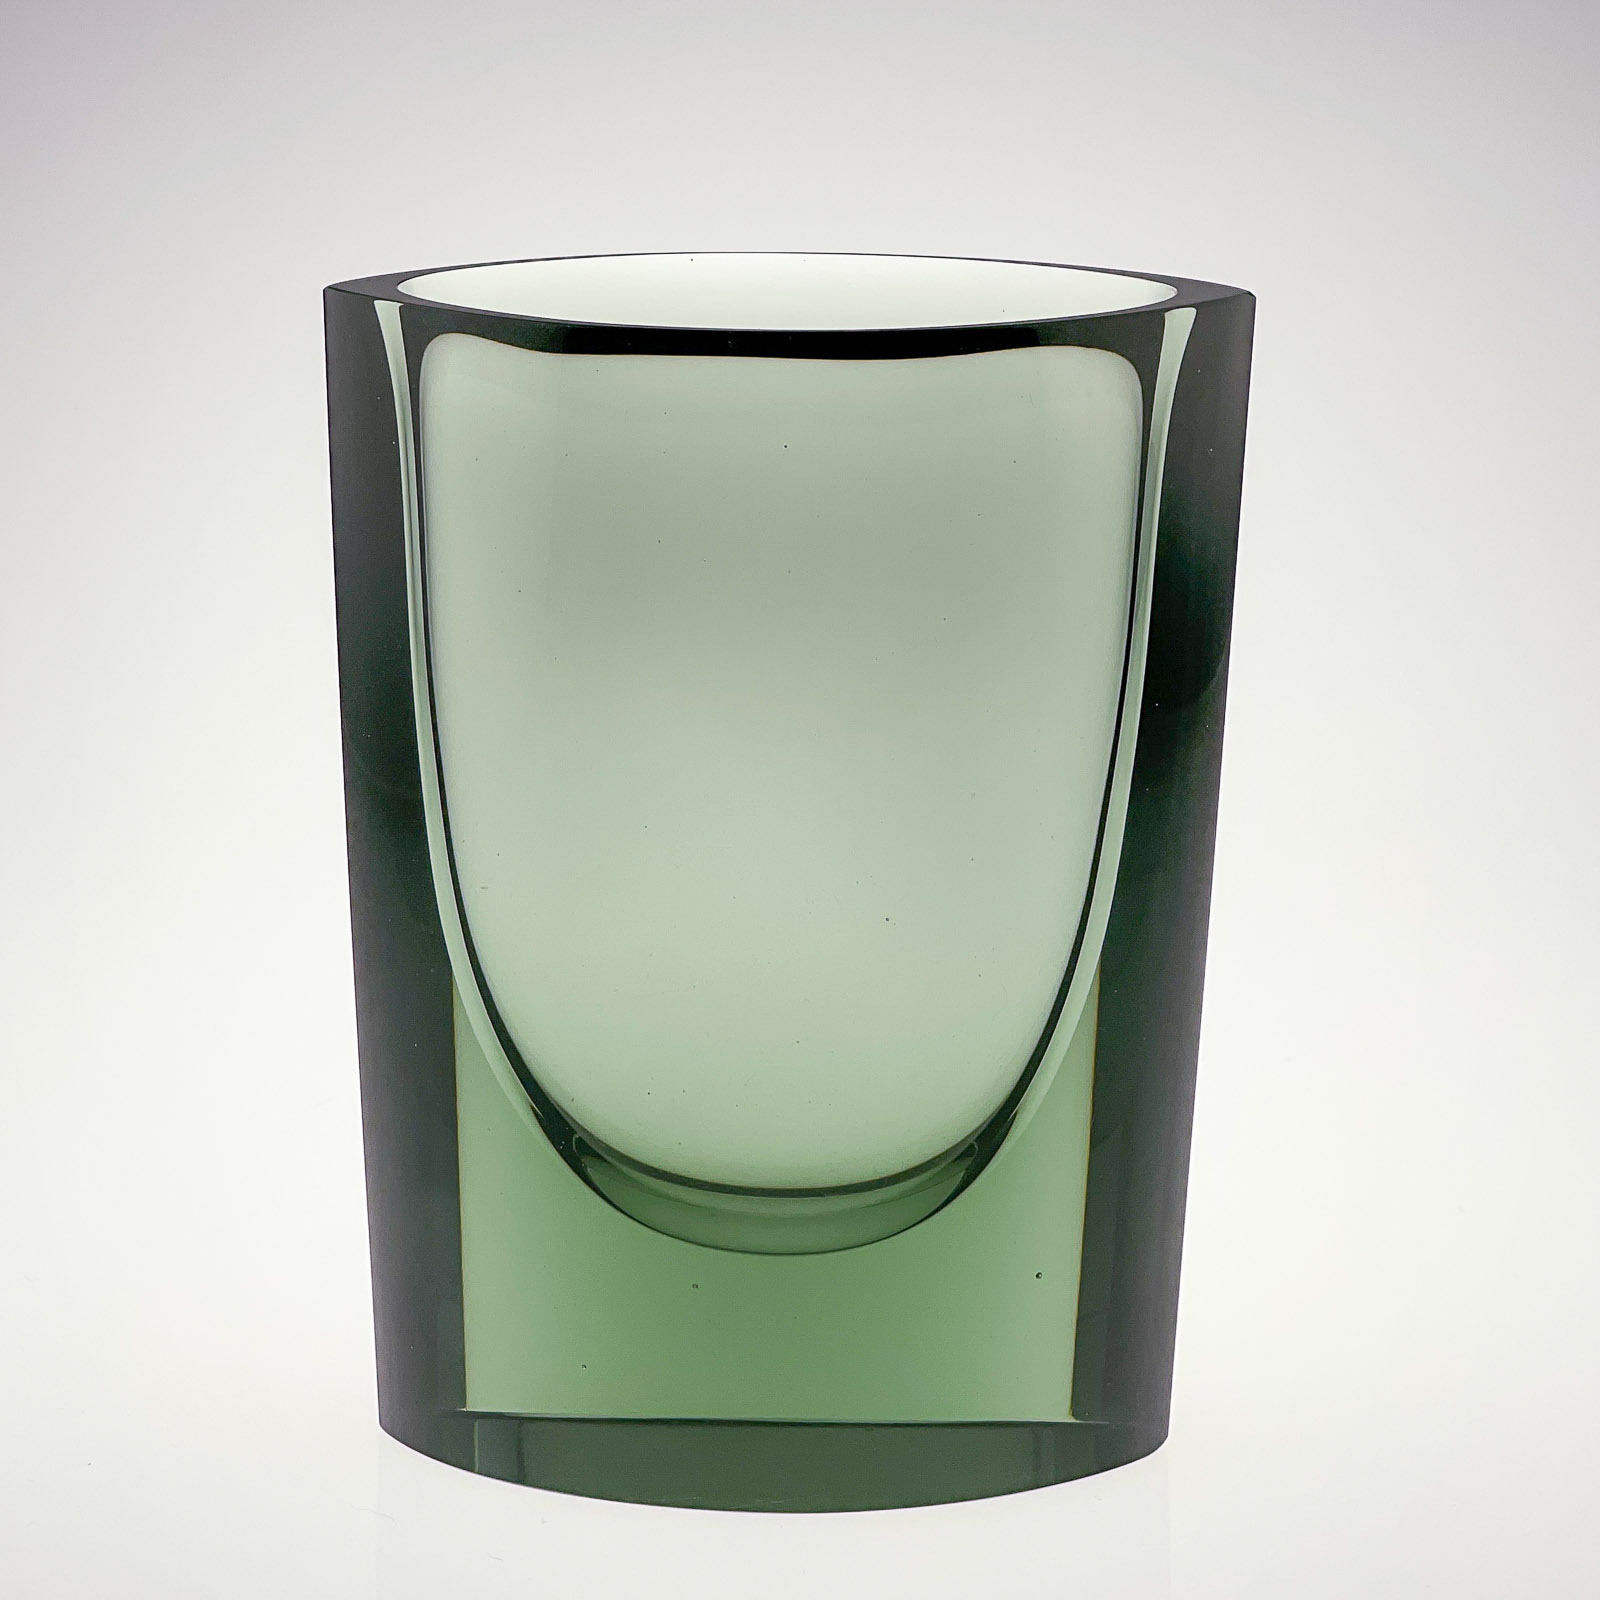 Kaj Franck - Green glass art-object, model N407 - Nuutajärvi-Notsjö Finland, 1967